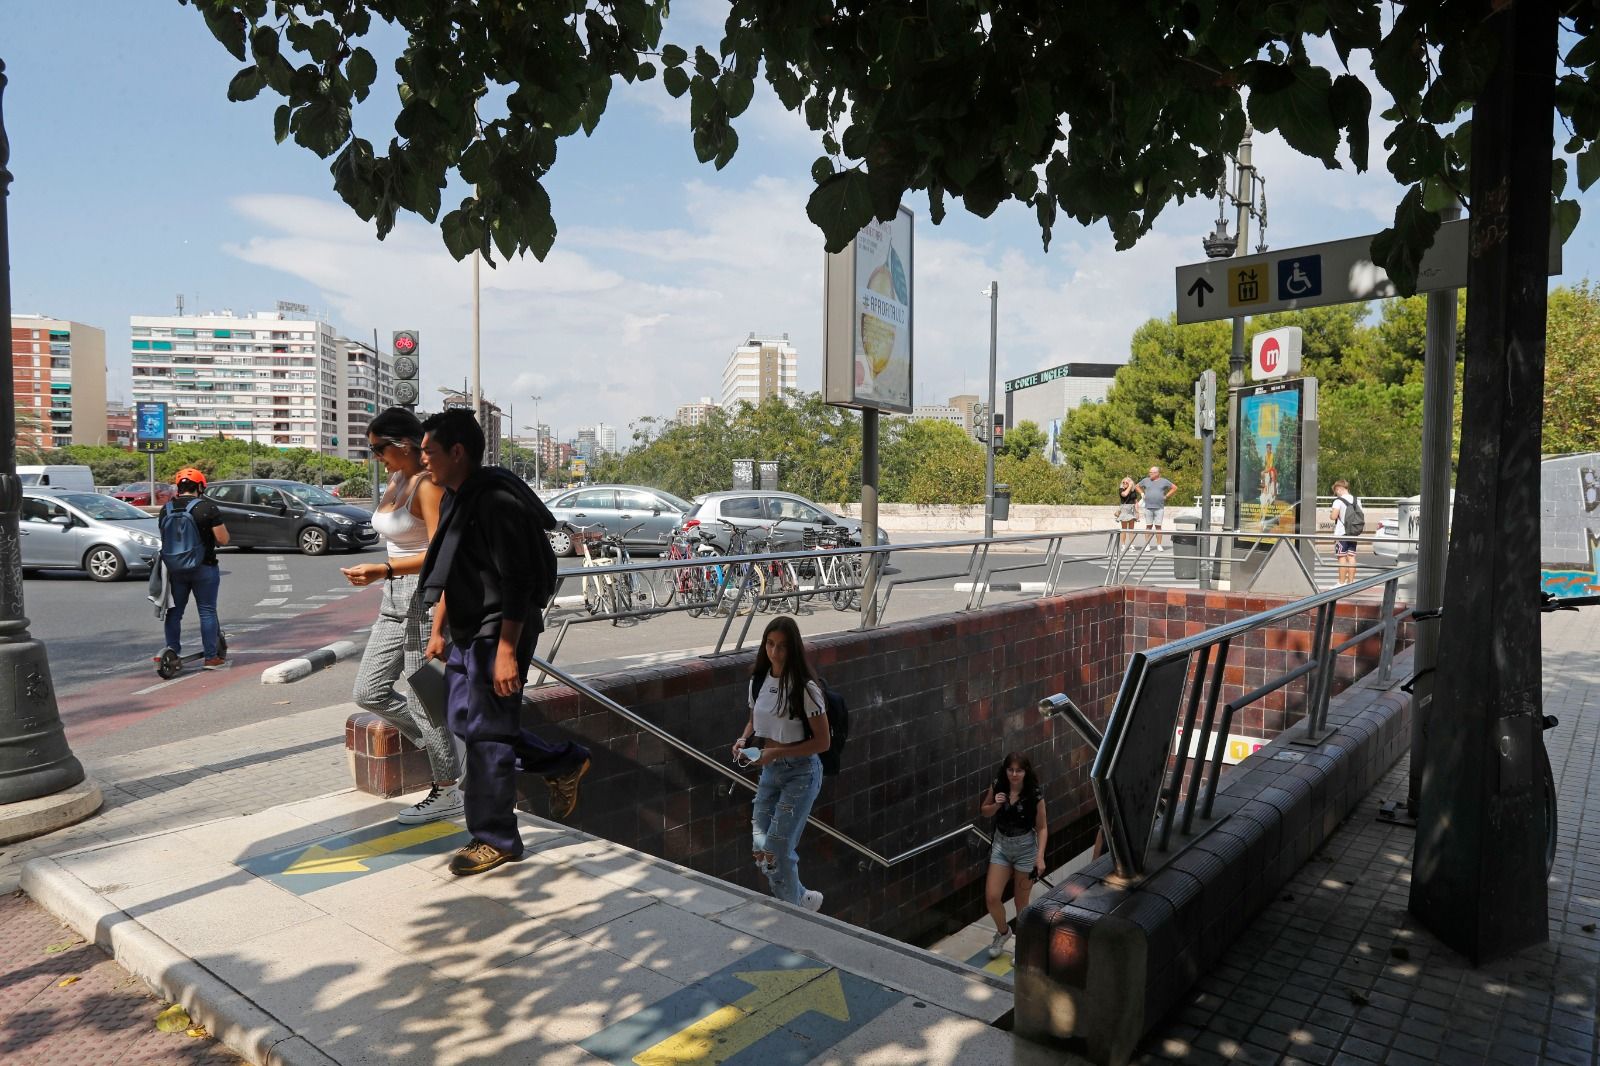 Transporte público gratis hoy en València: viajar en bus y metro sin coste